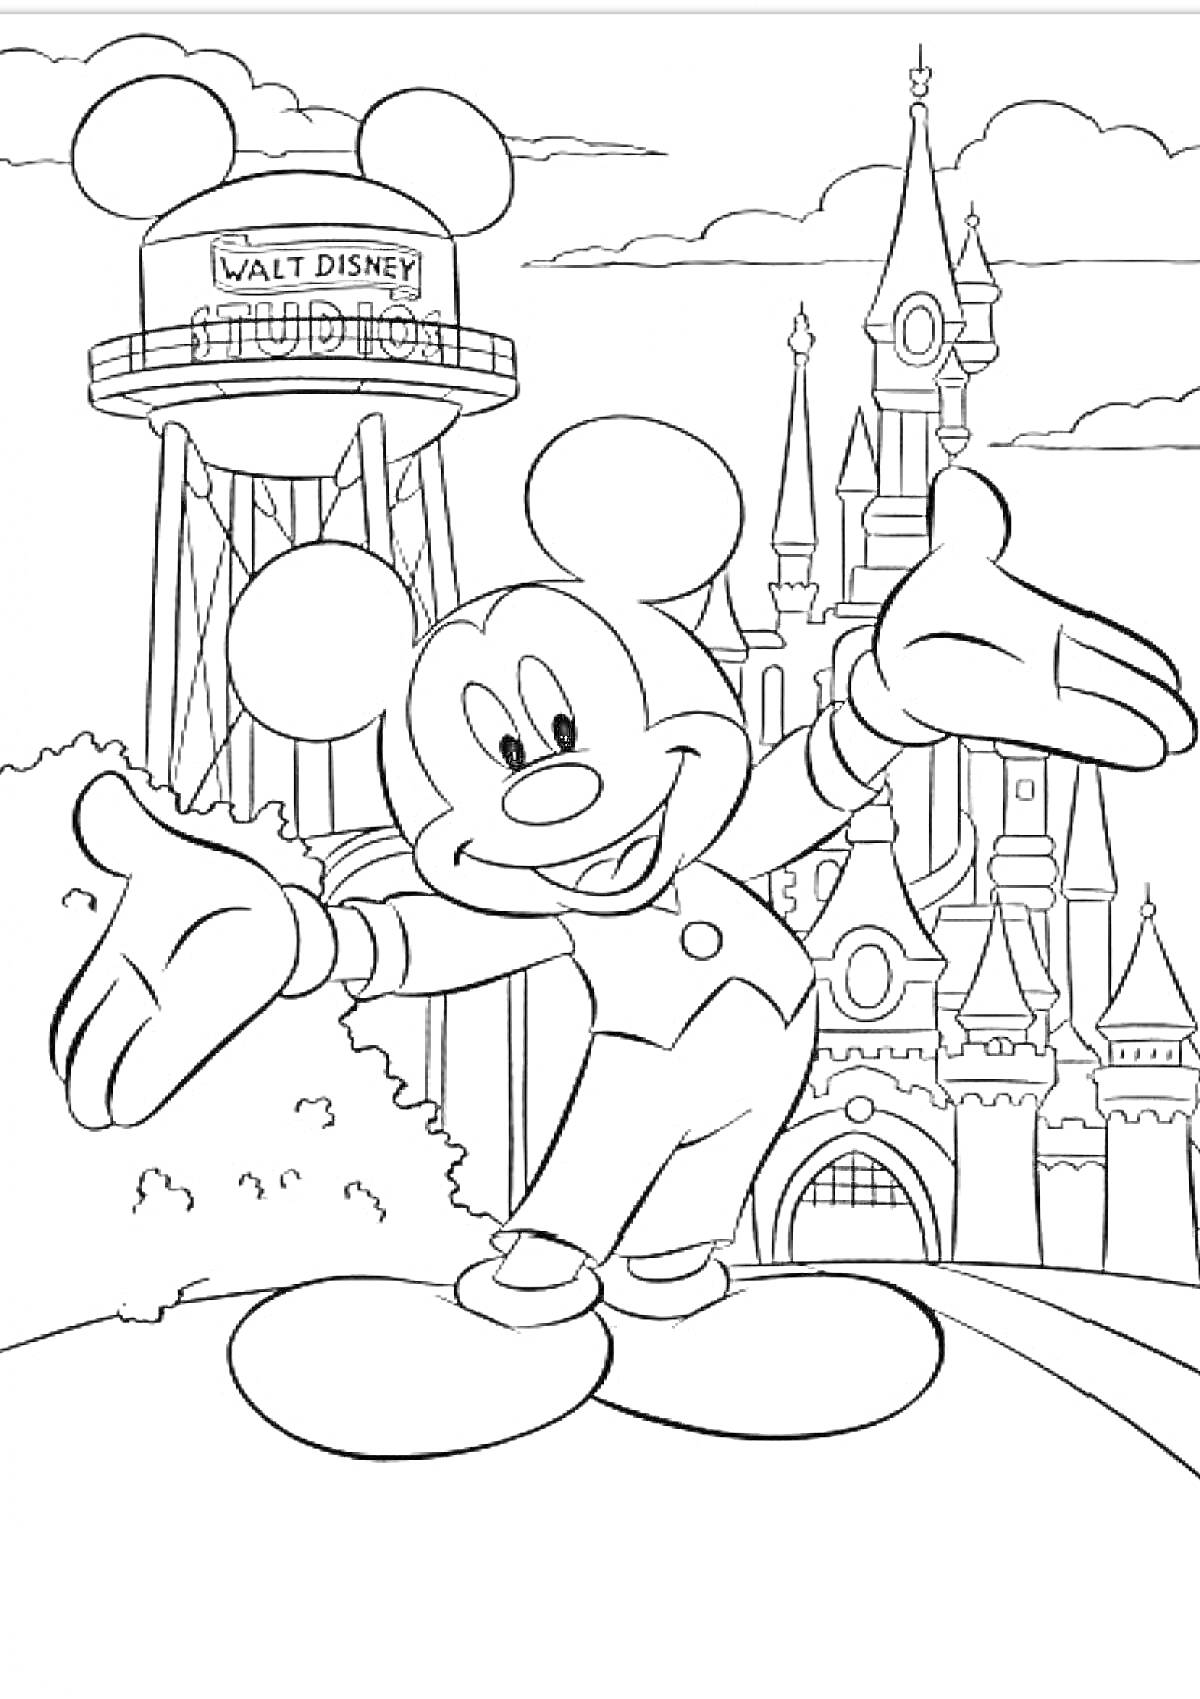 Раскраска Микки Маус перед замком и водонапорной башней Walt Disney Studio